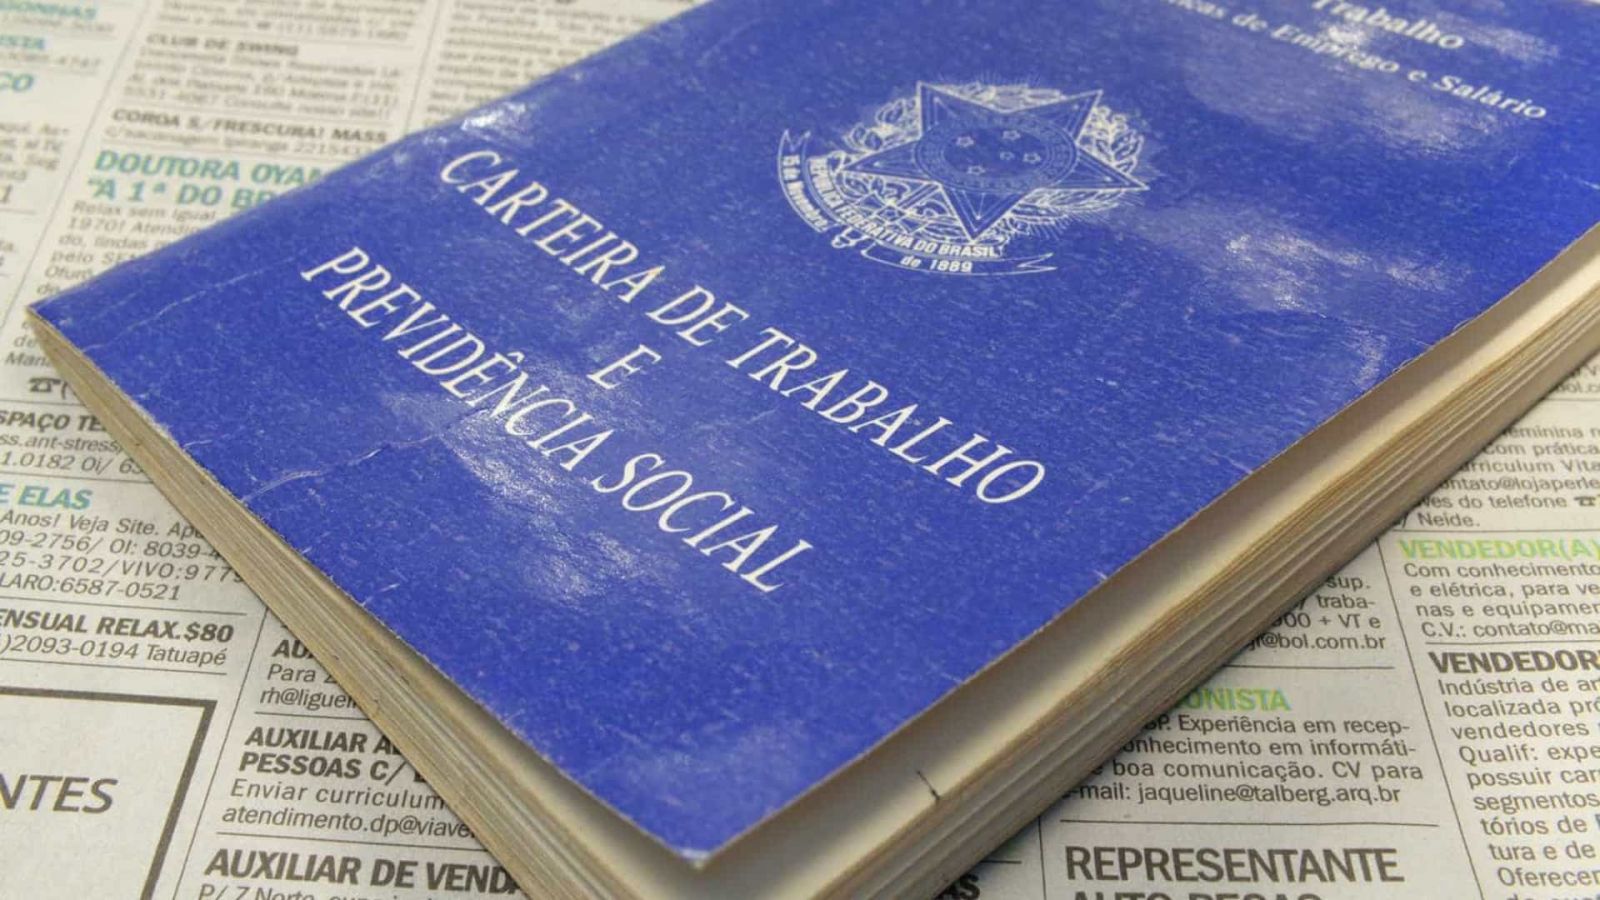 DECRETO ESTABELECE QUE ORDEM A TEMPORÁRIO NÃO GERA VÍNCULO - News Rondônia